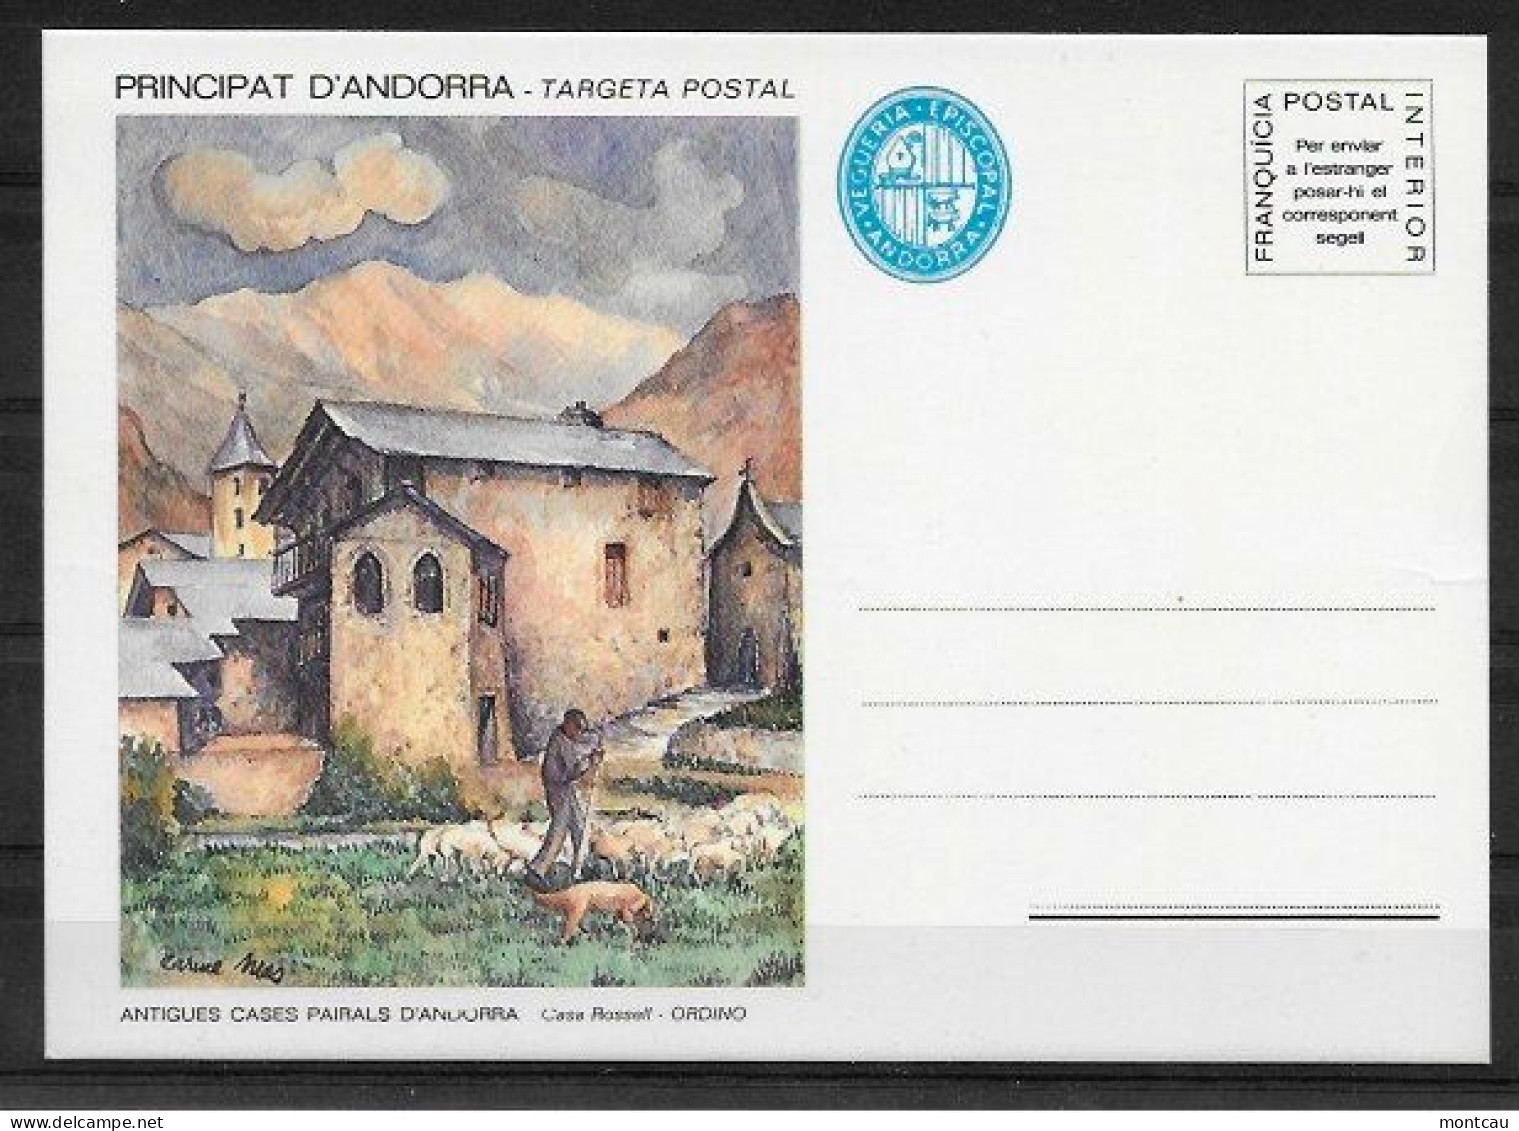 Andorra - Franquicia Postal - Ordino - Vegueria Episcopal